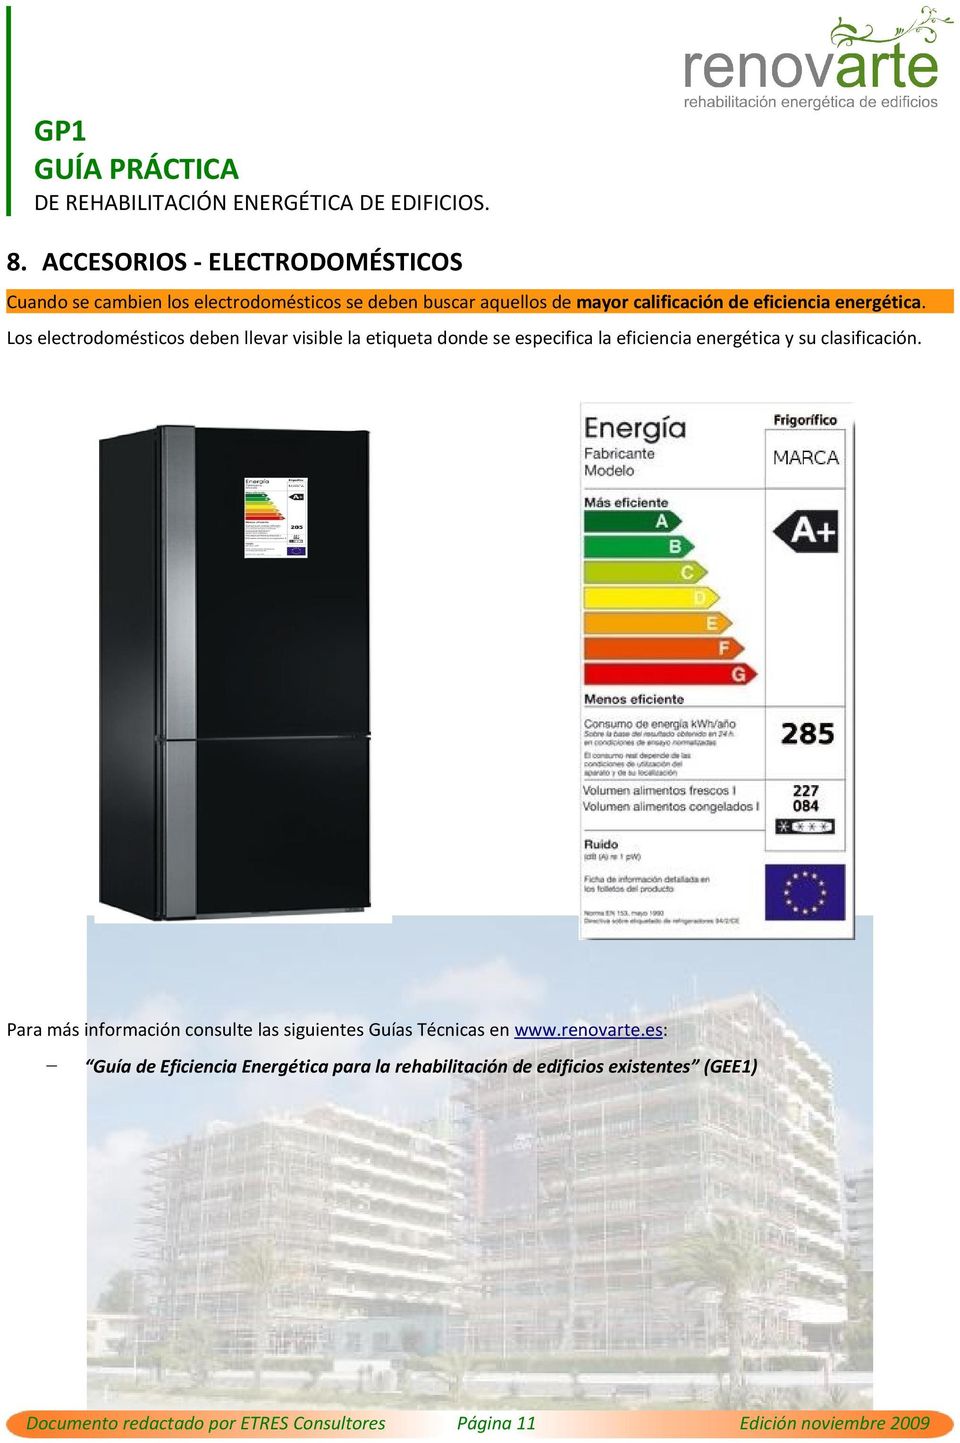 Los electrodomésticos deben llevar visible la etiqueta donde se especifica la eficiencia energética y su